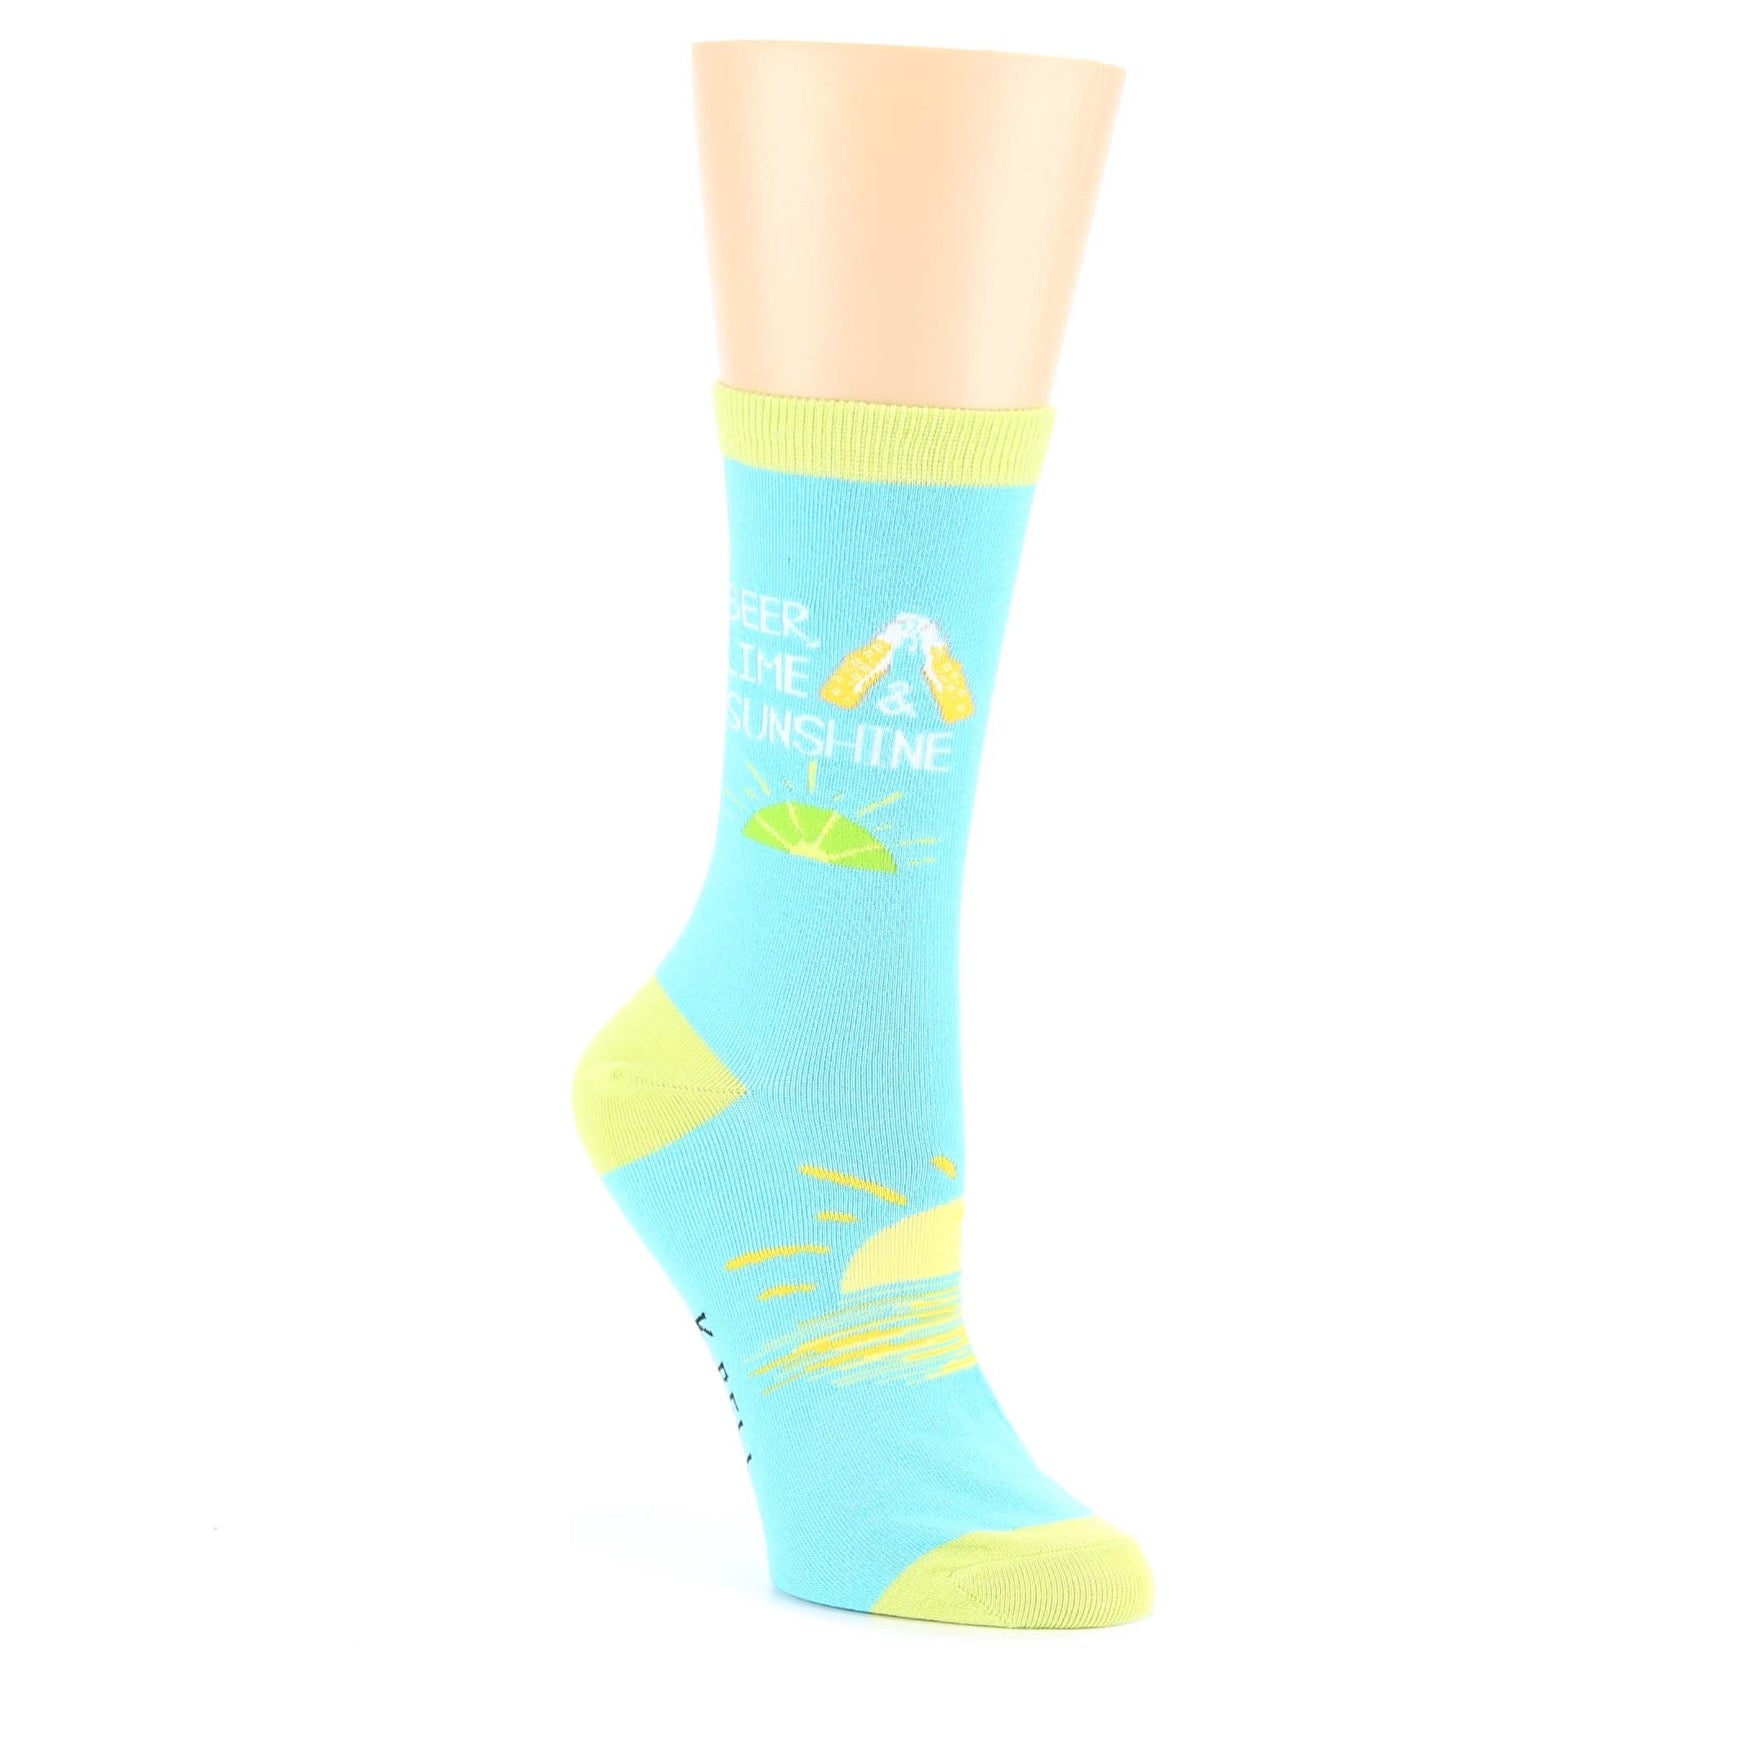 Blue Lime Sunshine Beer Socks - Women's Novelty Socks